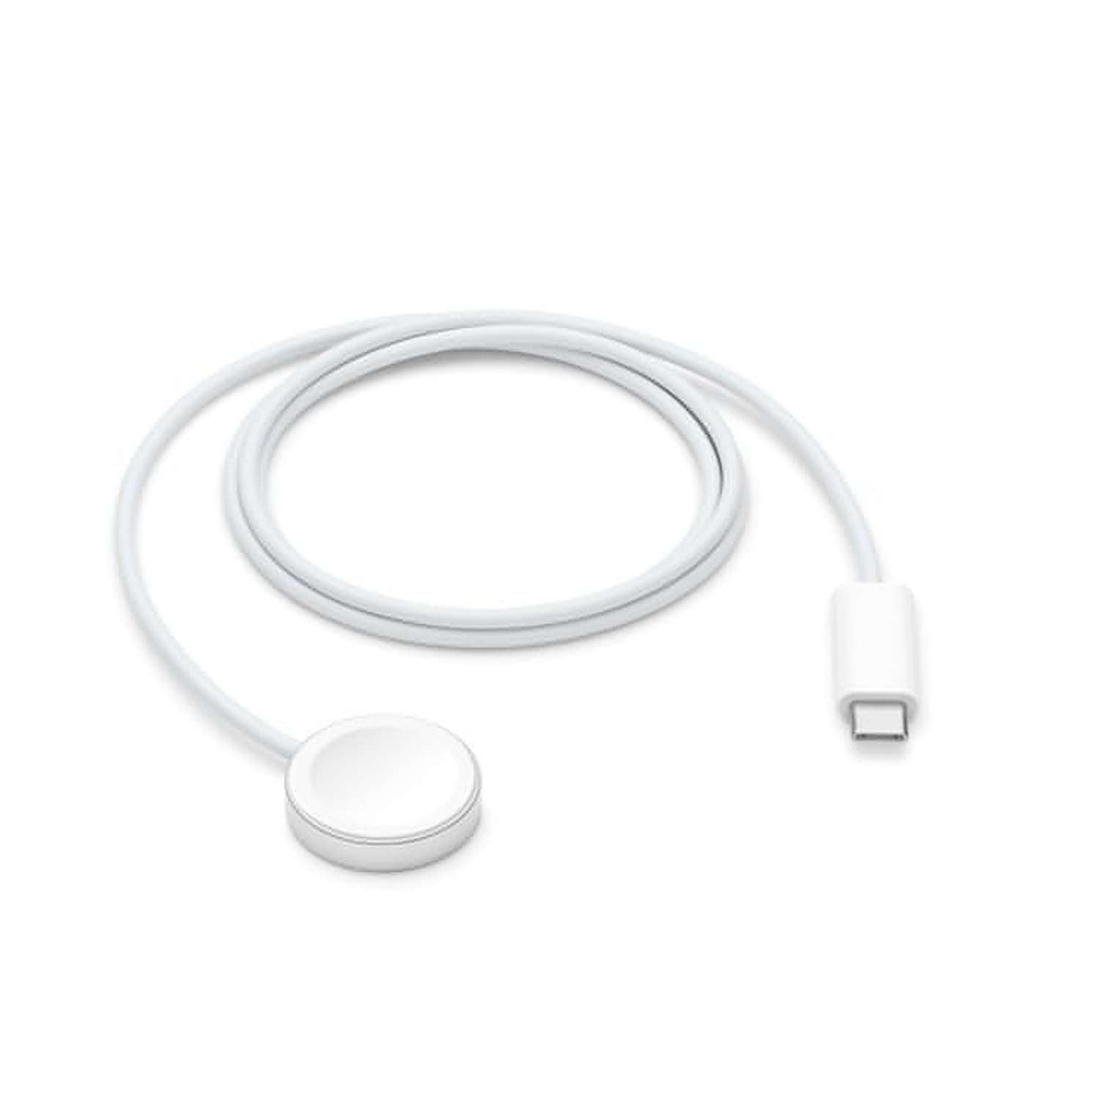 Cable de carga magnética rapida para el Apple Watch 1 Mt